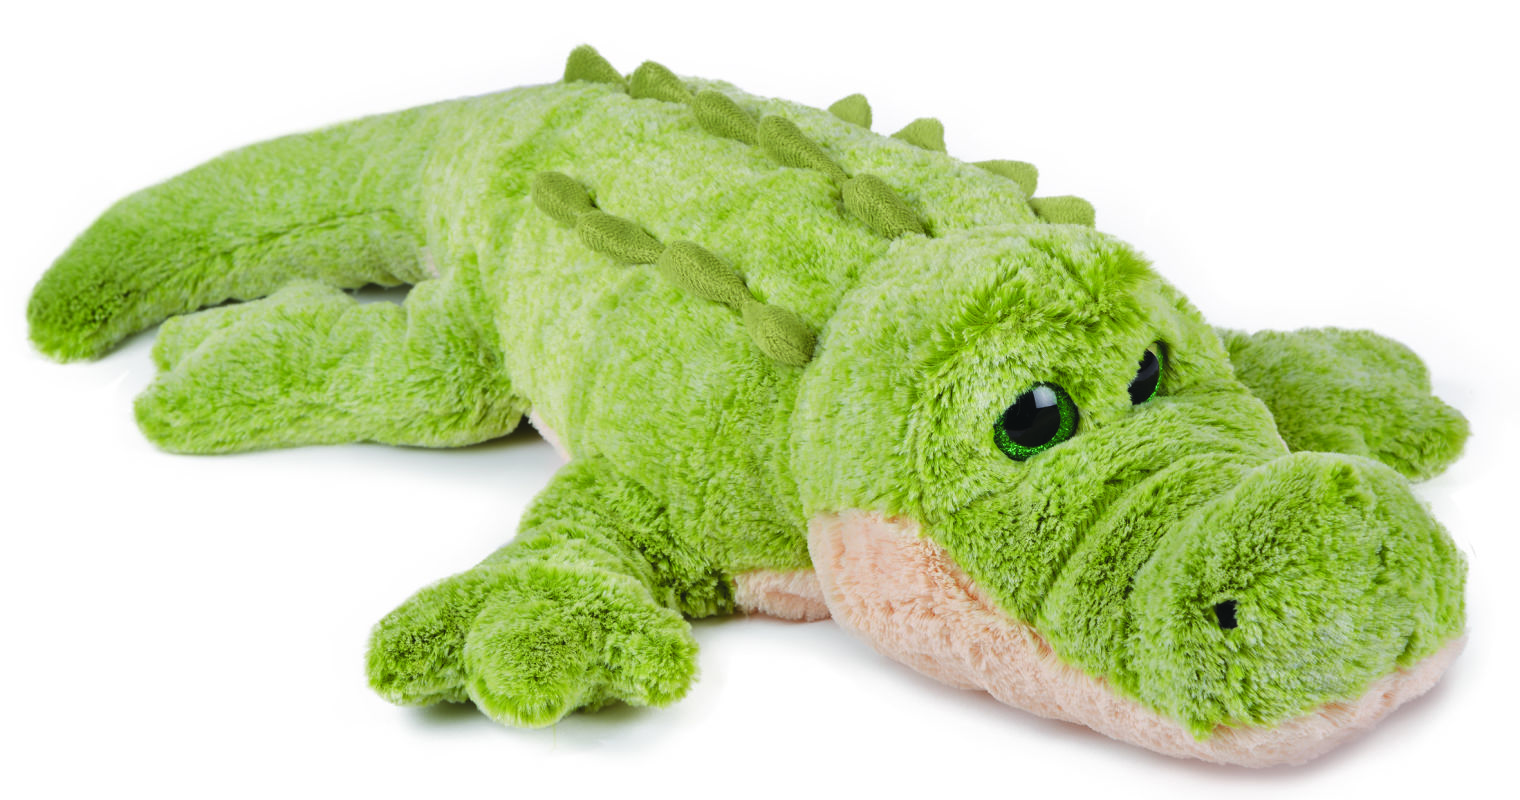  savannah soft toy green beige crocodile 70 cm 